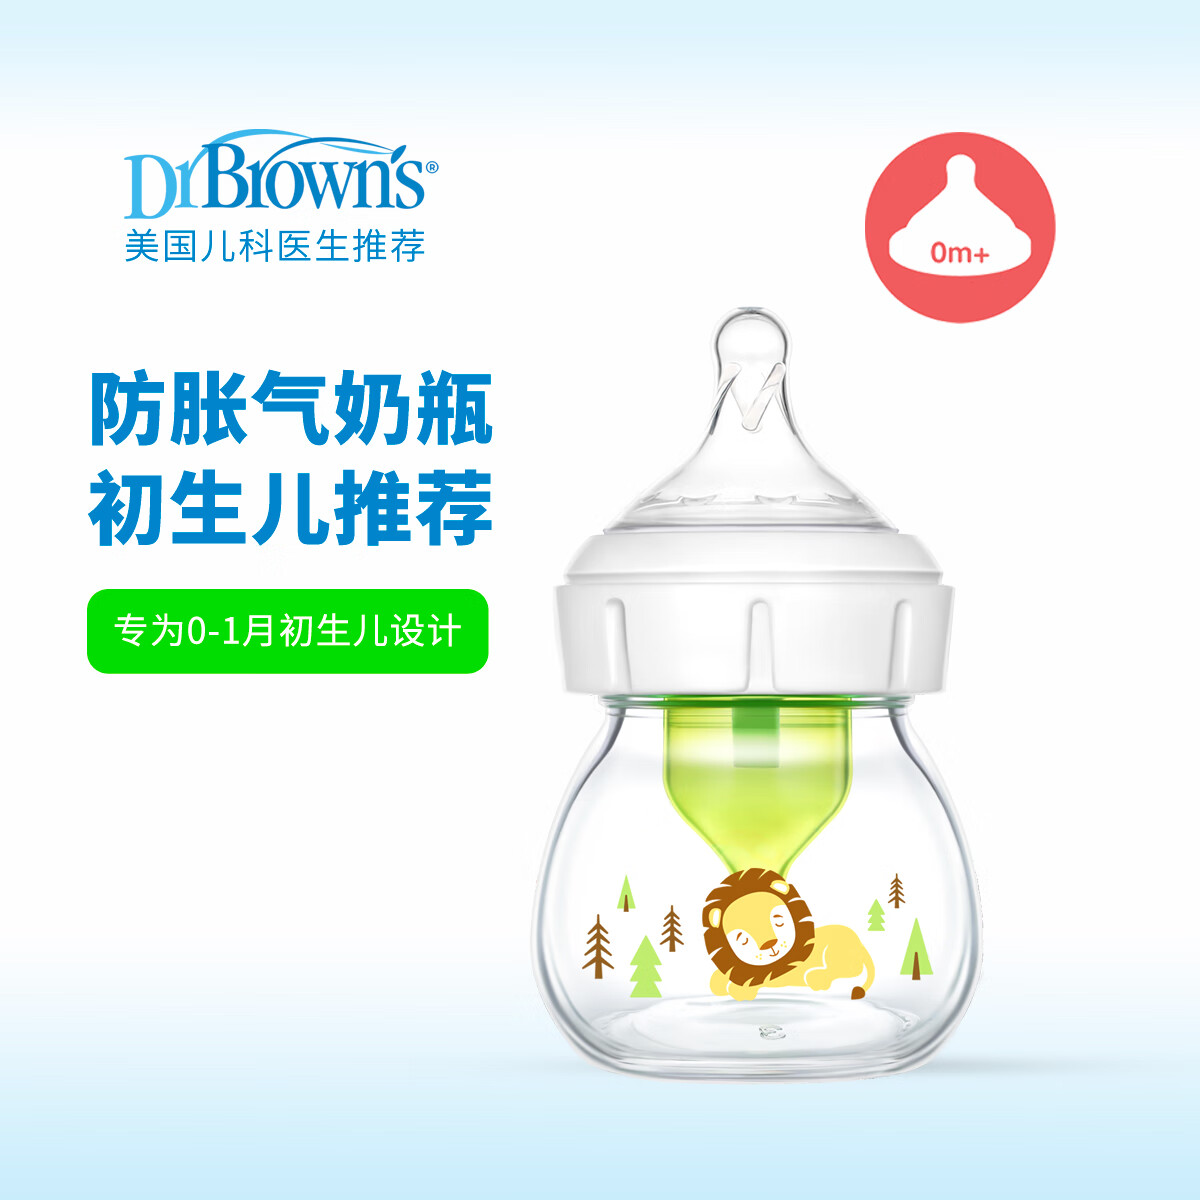 布朗博士 京东布朗博士 奶瓶初生儿玻璃奶瓶0-1月 60ml 38元